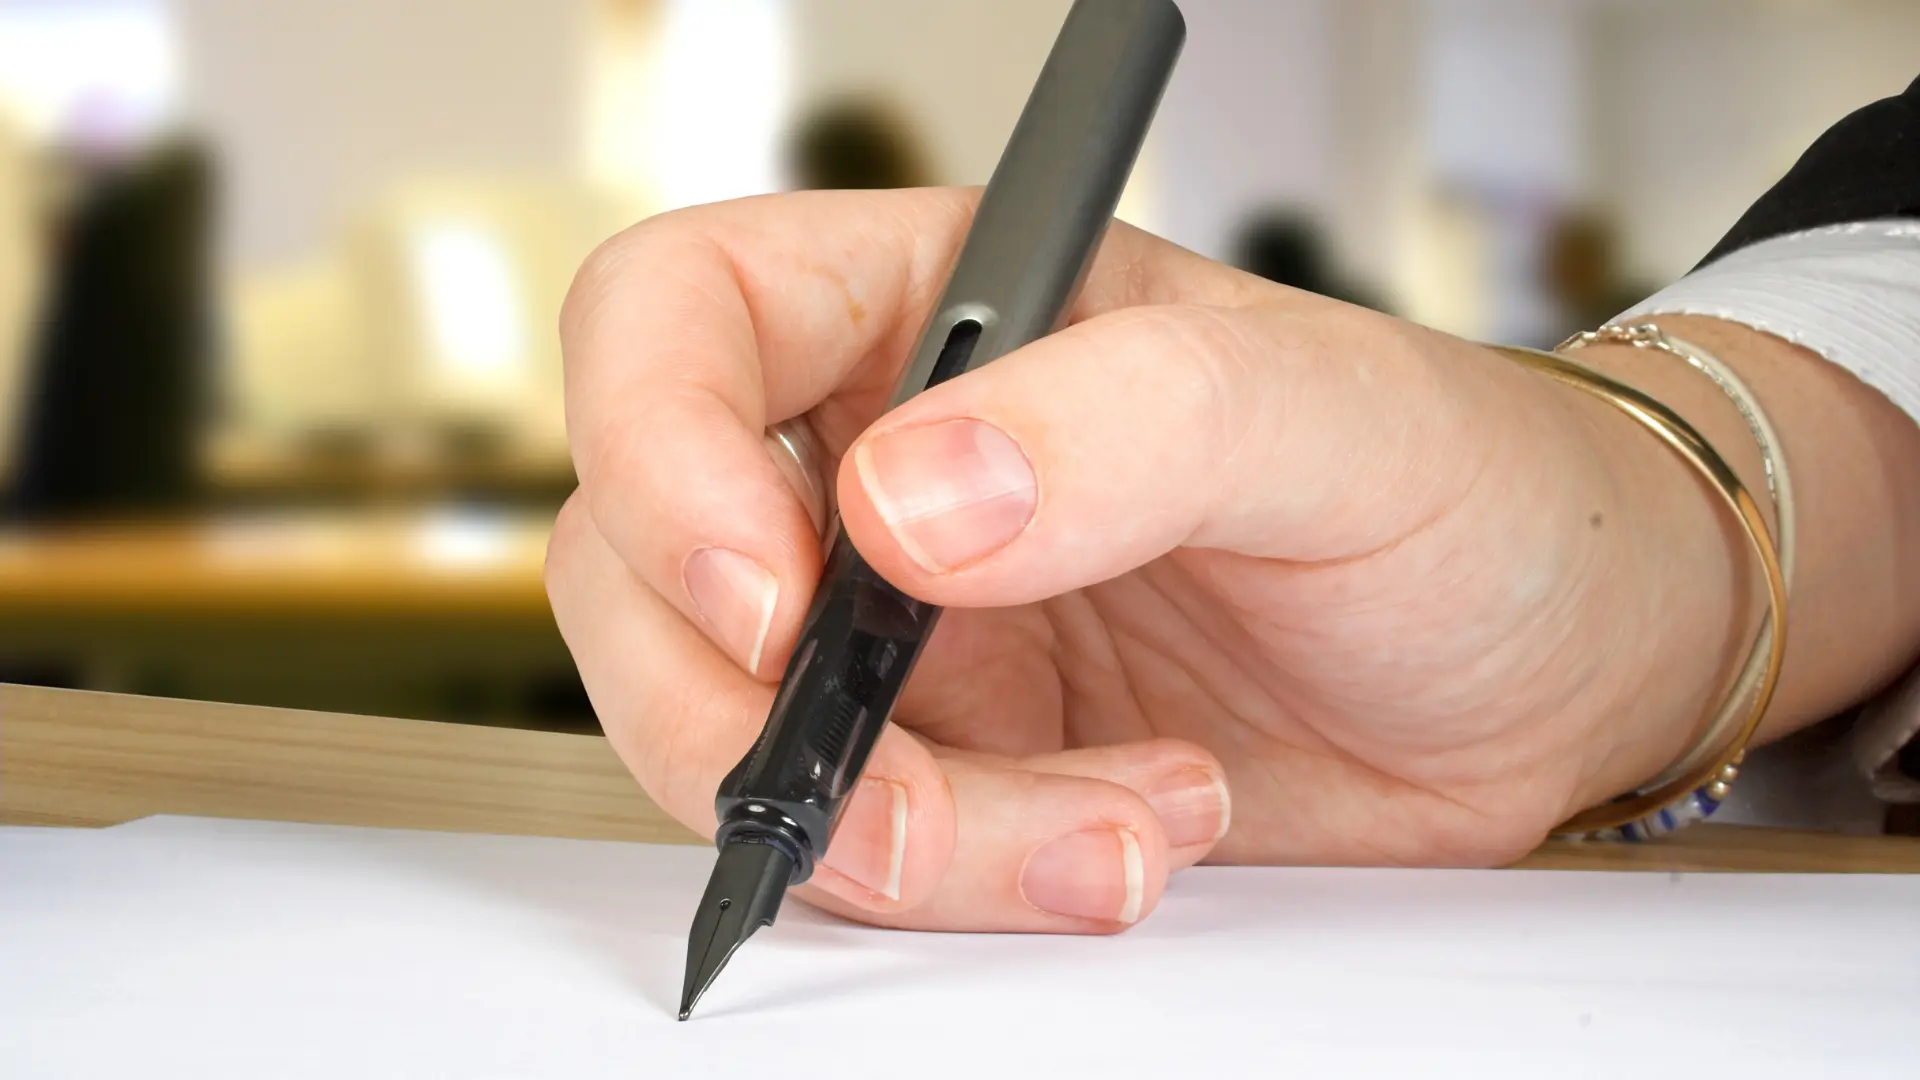 Zoom sur la main d'une personne écrivant une lettre de motivation au stylo.